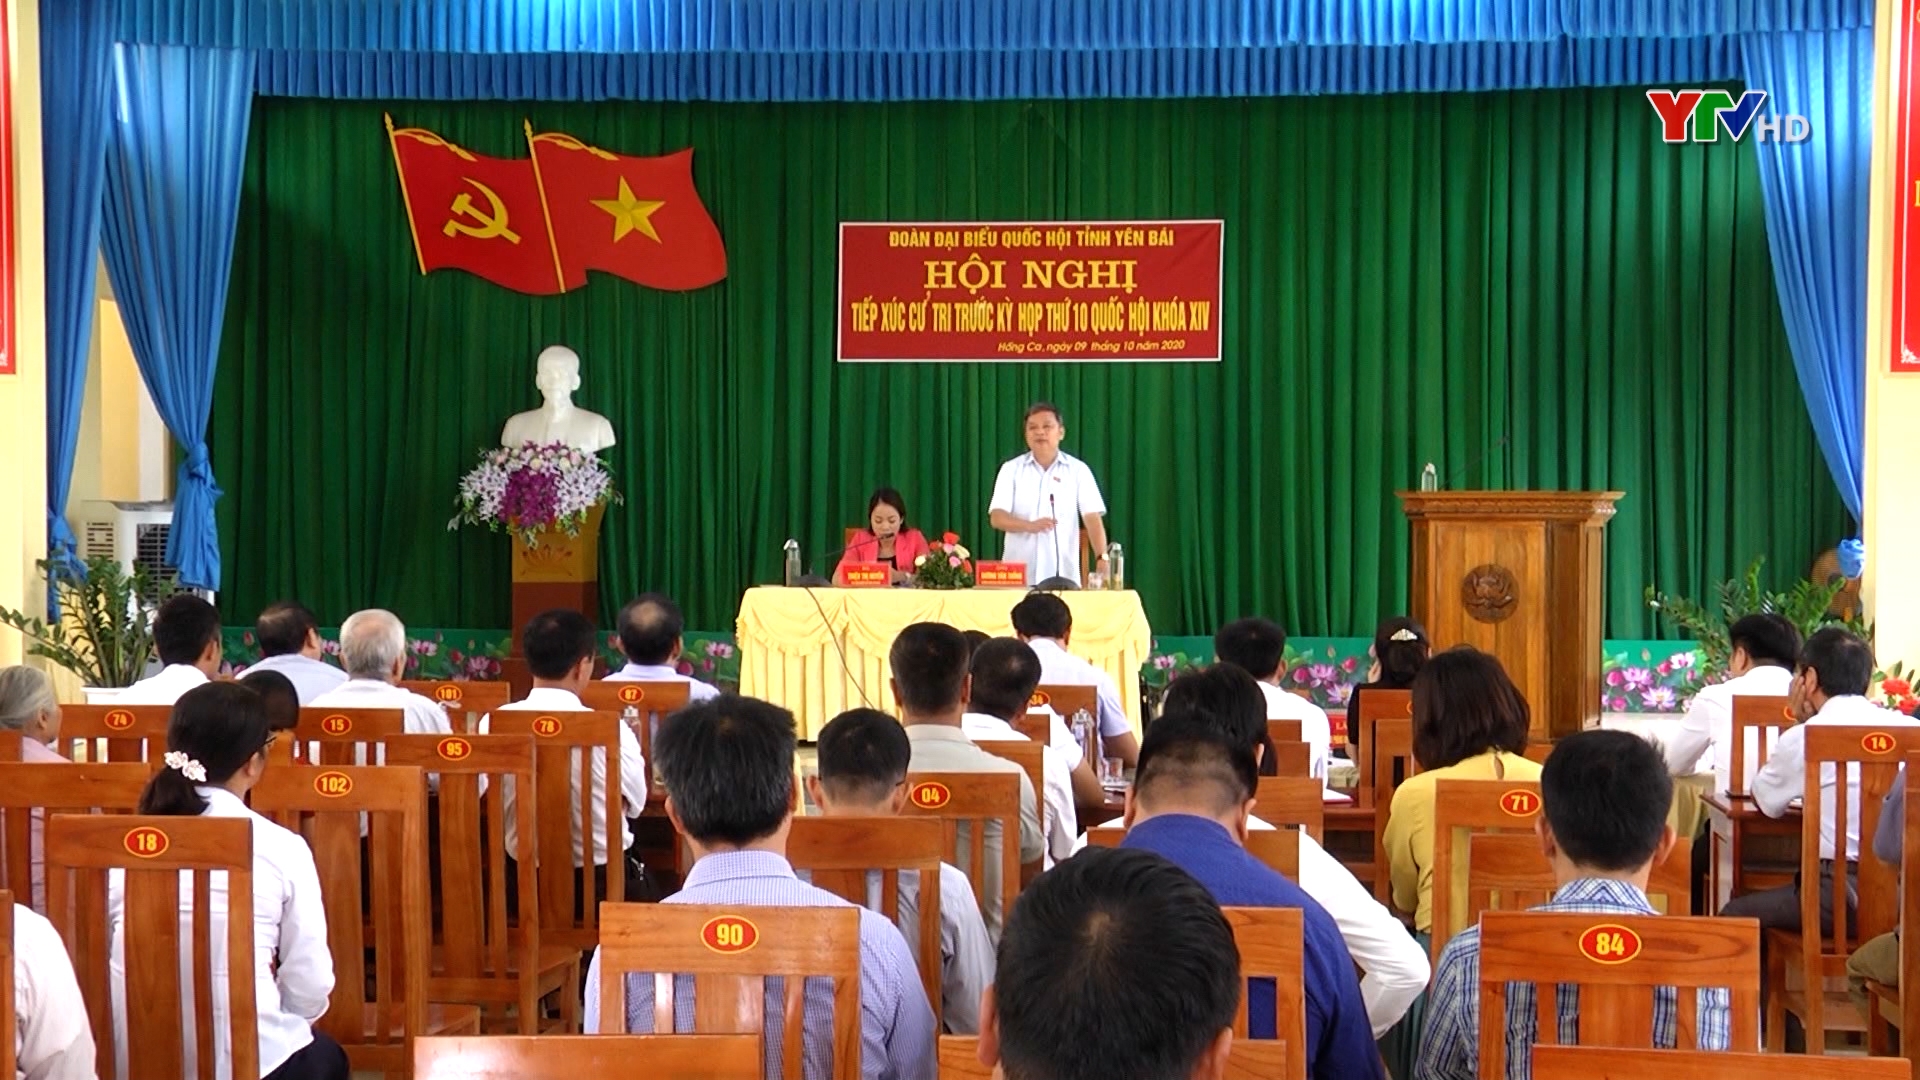 Đoàn đại biểu Quốc hội tỉnh Yên Bái tiếp xúc cử tri huyện Trấn Yên